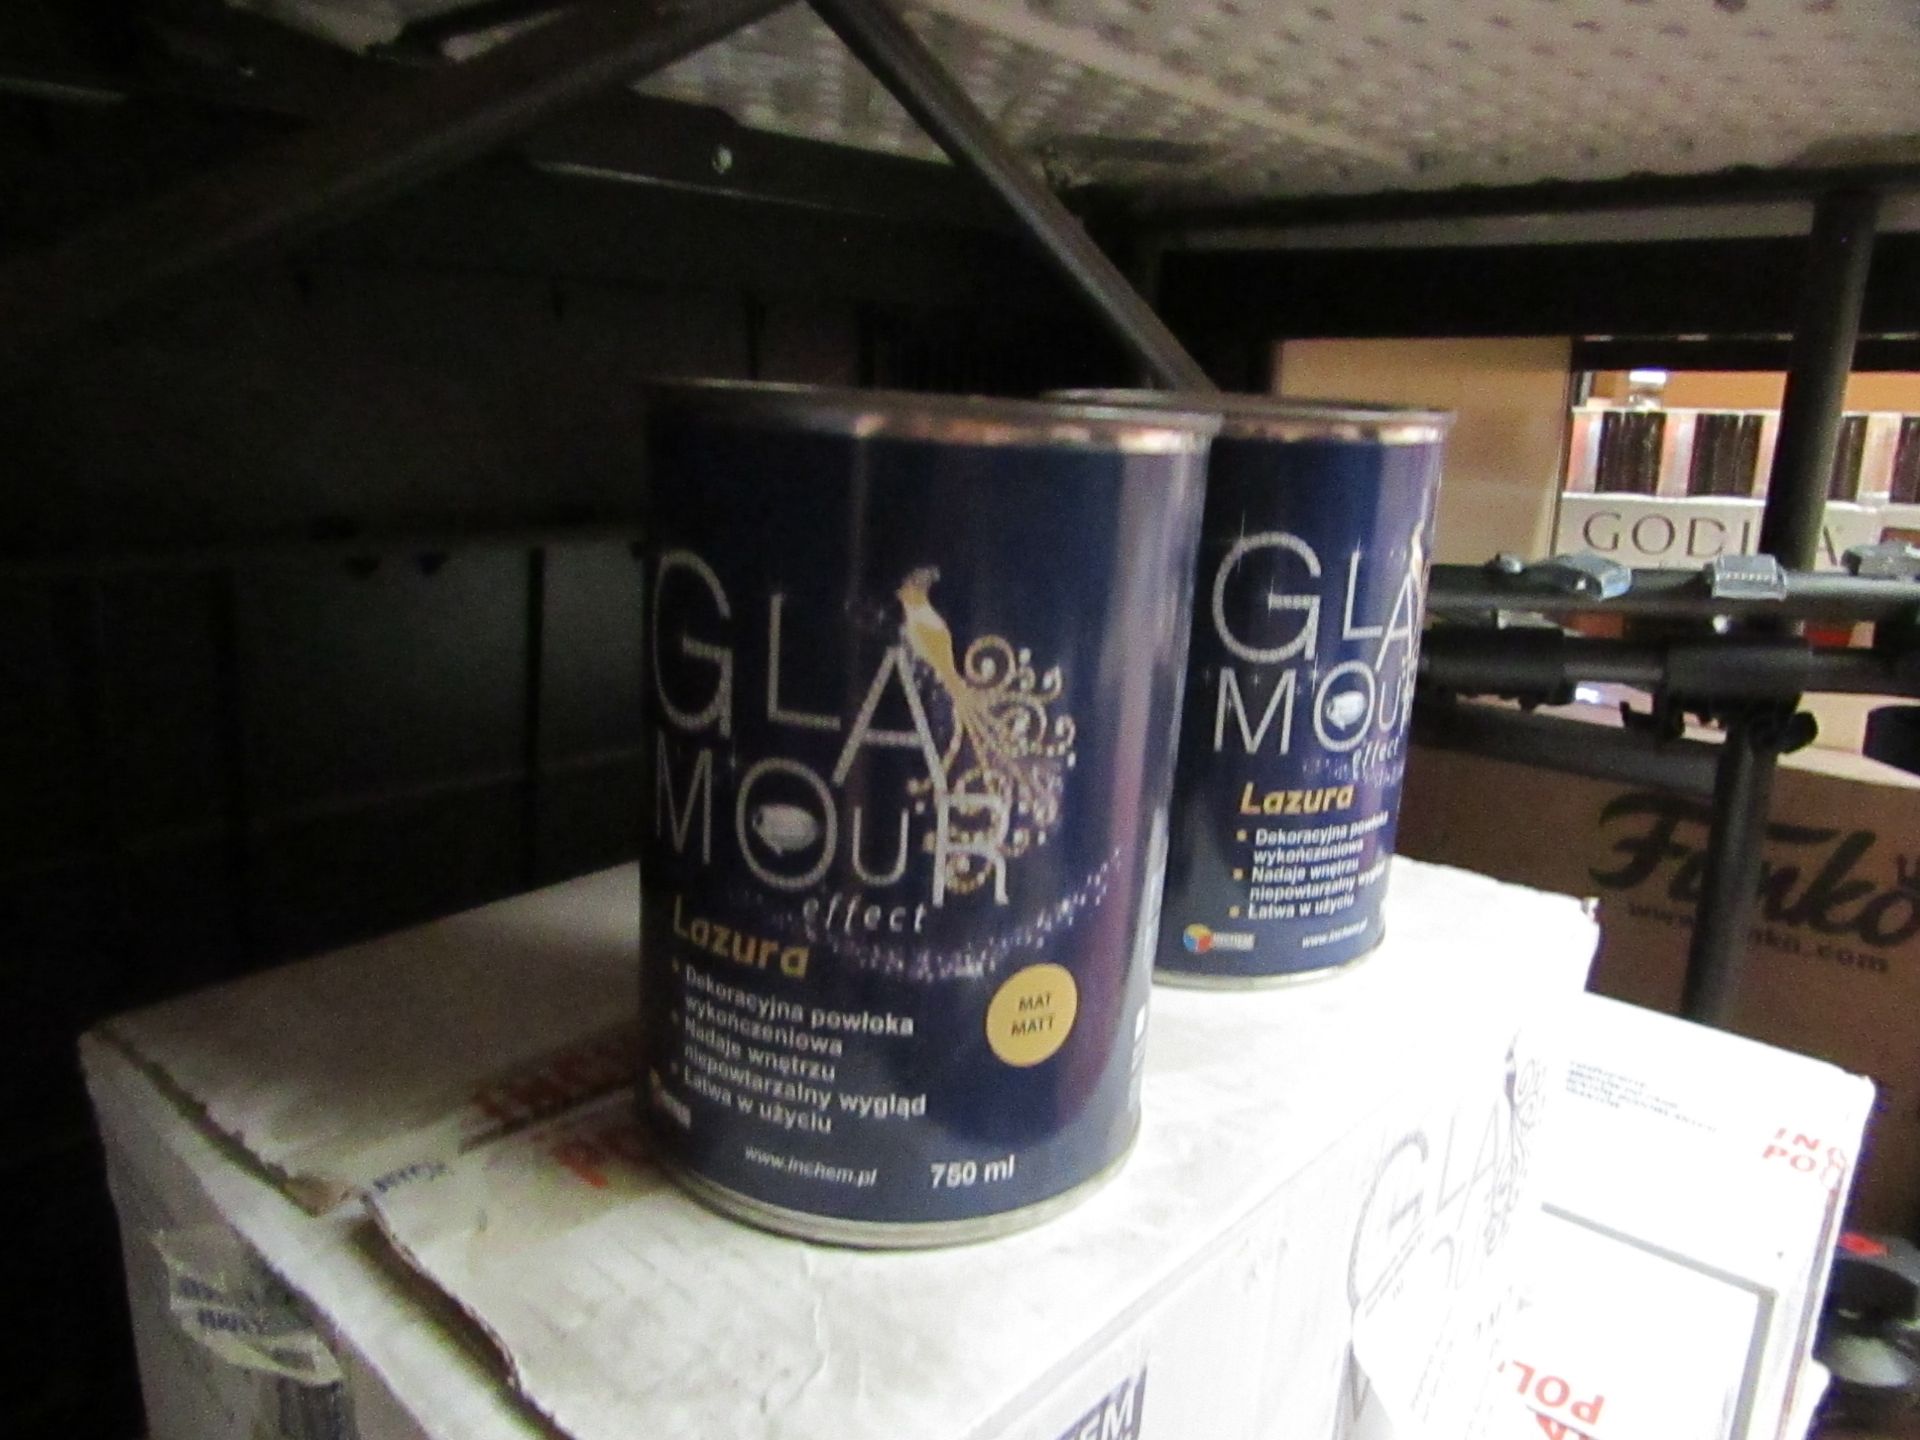 Glamour - Glaze Matt Paint (6x 750ml Per Box) - BBD 08-03-19 - Unused & Boxed.